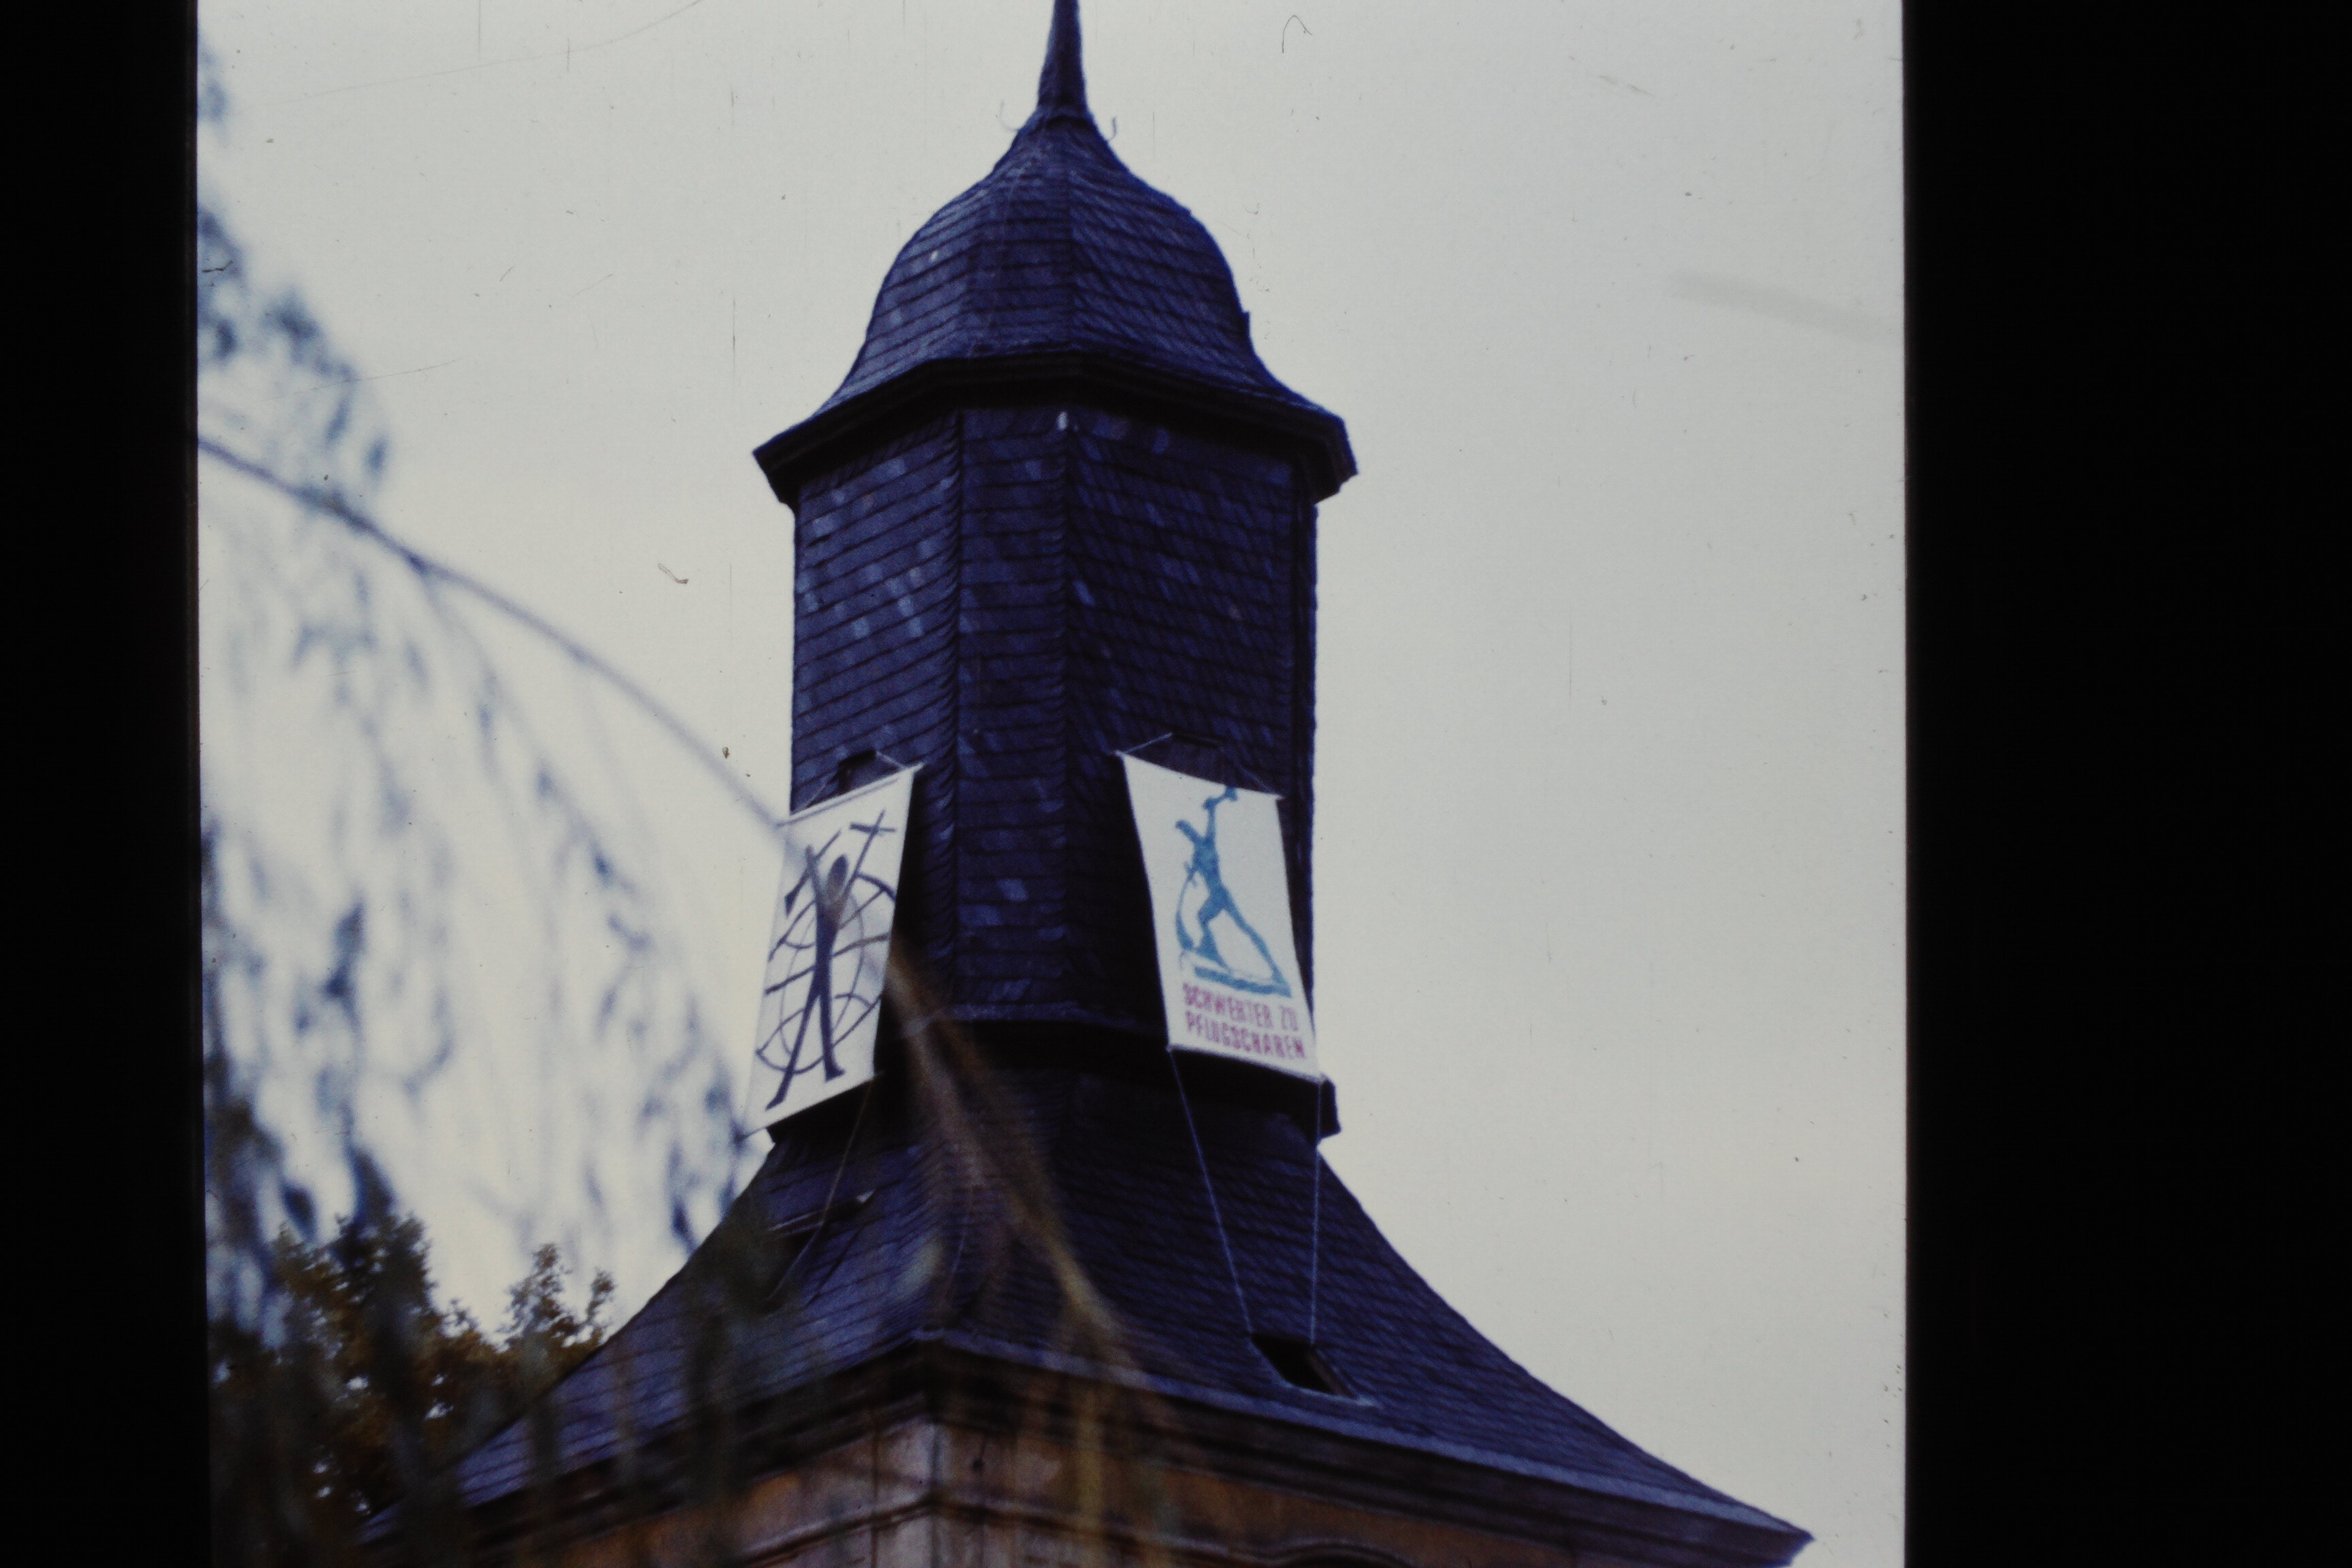 Kirchturm der Köritzer Gemeinde in Neustadt (Dosse): Transparente mit aufgemaltem "Schwerter zu Pflugscharen" und "Mann vor Weltkugel" (DDR Geschichtsmuseum im Dokumentationszentrum Perleberg CC BY-SA)